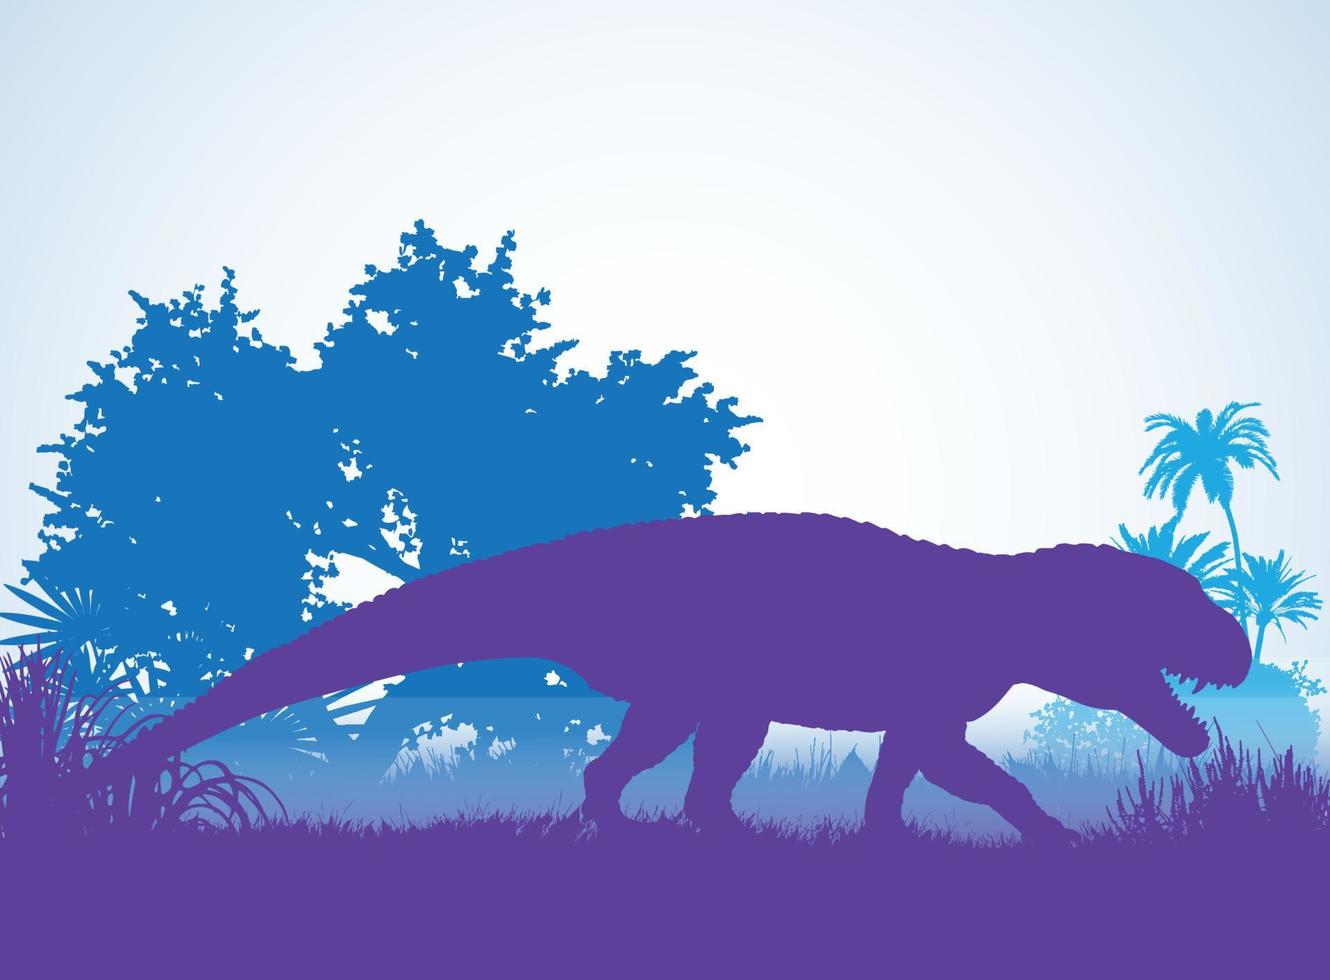 sagome di dinosauri postosuchus in ambiente preistorico strati sovrapposti sfondo decorativo banner illustrazione vettoriale astratta